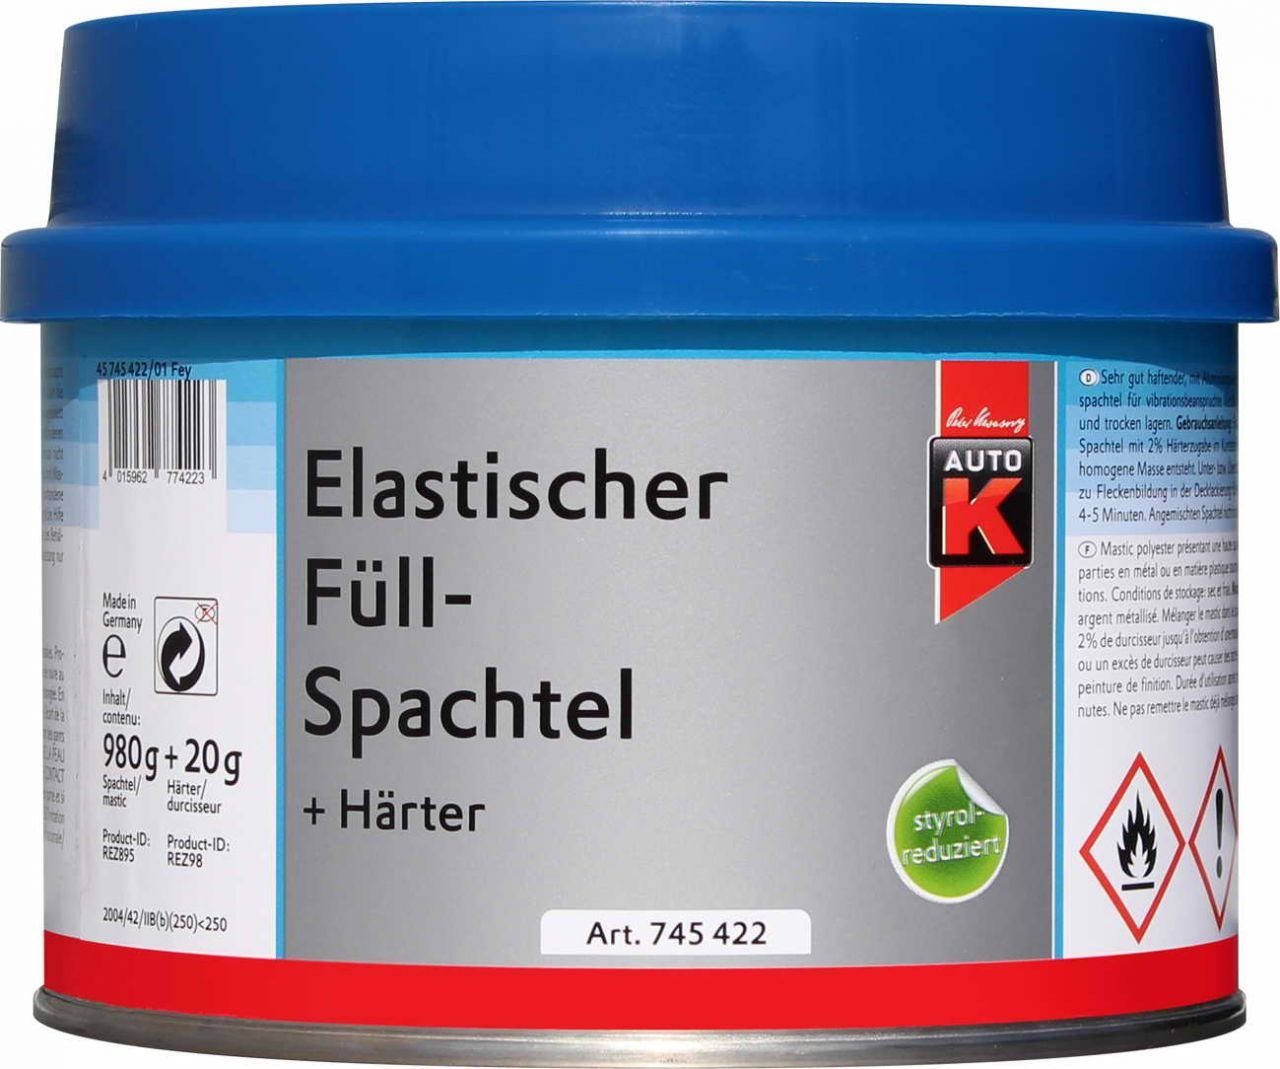 Elastischer Breitspachtel + Auto-K 1000g Füllspachtel Auto-K Härter